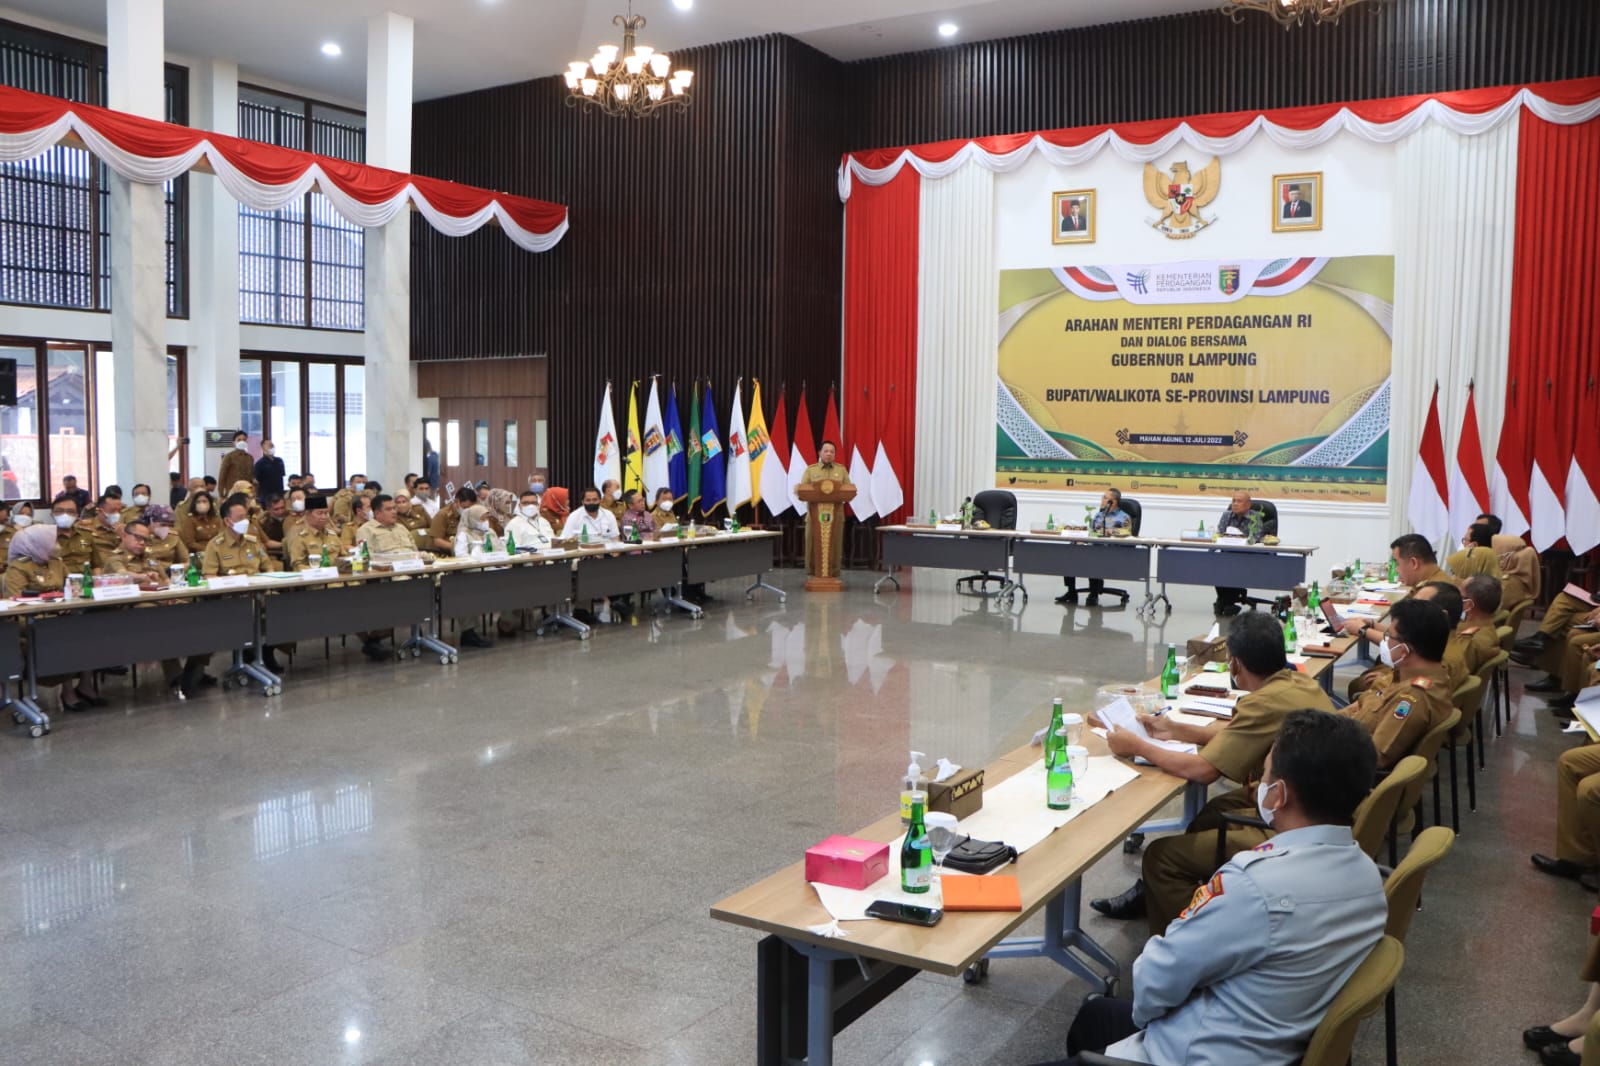 Gubernur Arinal Djunaidi Dampingi Menteri Perdagangan RI Dalam Arahan dan Dialog Bersama Walikota Se-Provinsi Lampung